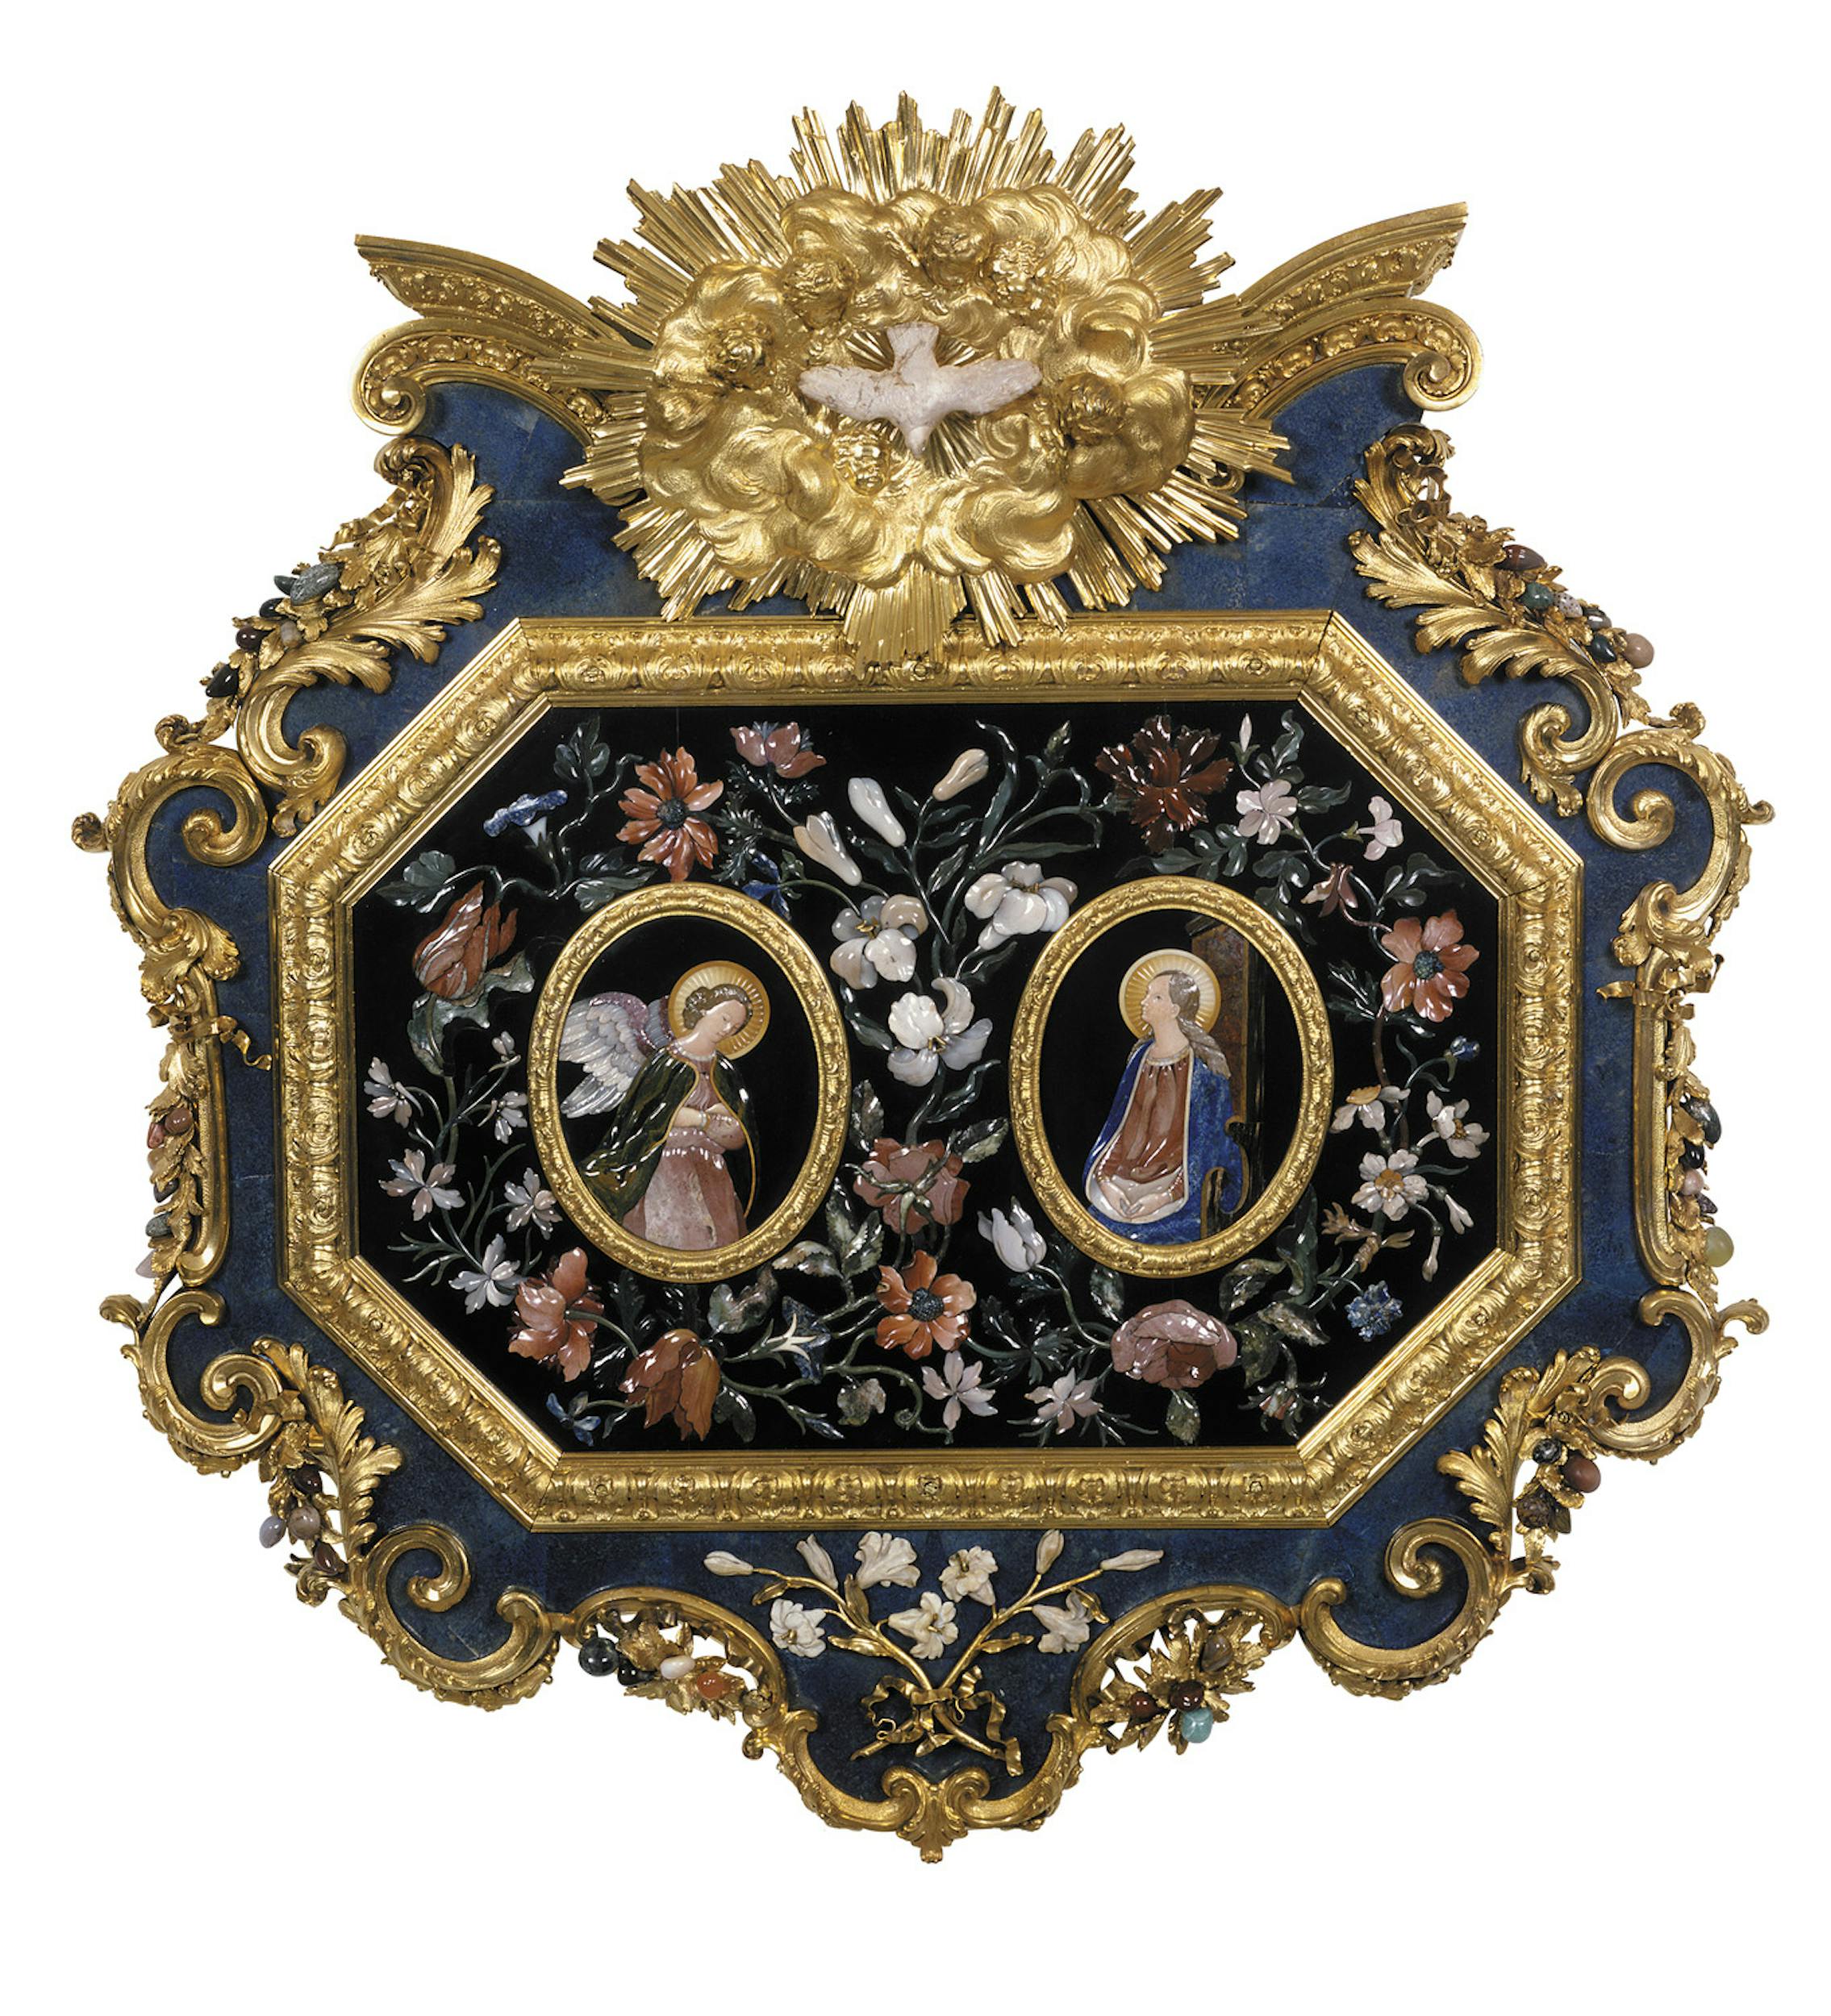 Giovan Battista Foggini e Botteghe granducali Placca con Annunciazione 1722 bronzo dorato e pietre dure Badisches Landesmuseum, Karlsruhe